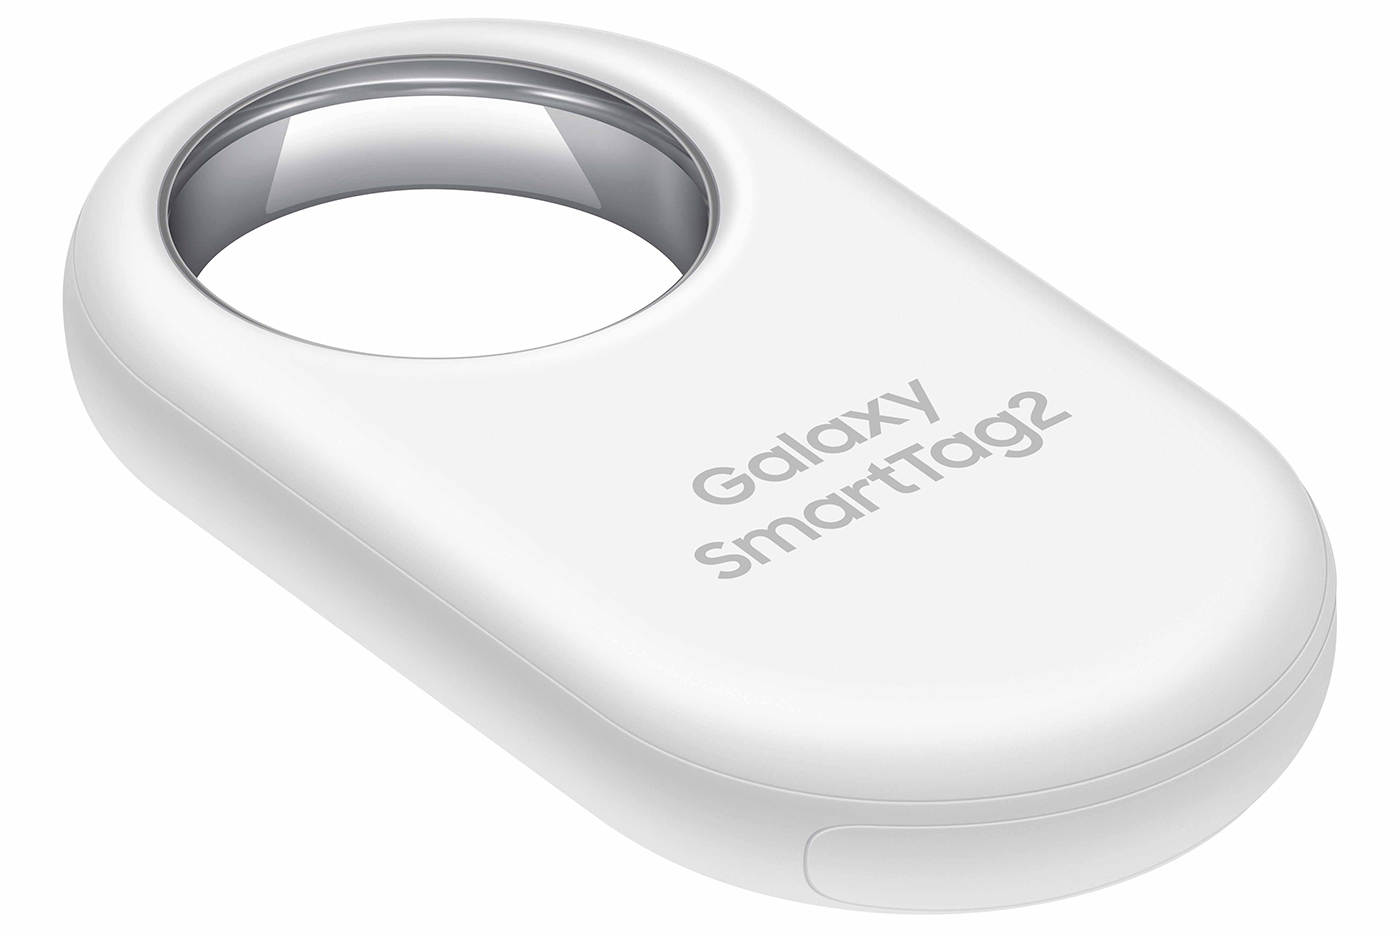 Samsung Galaxy SmartTag2: Vielseitigeres Design aber Funktionen beim AirTag  abgeschaut ›